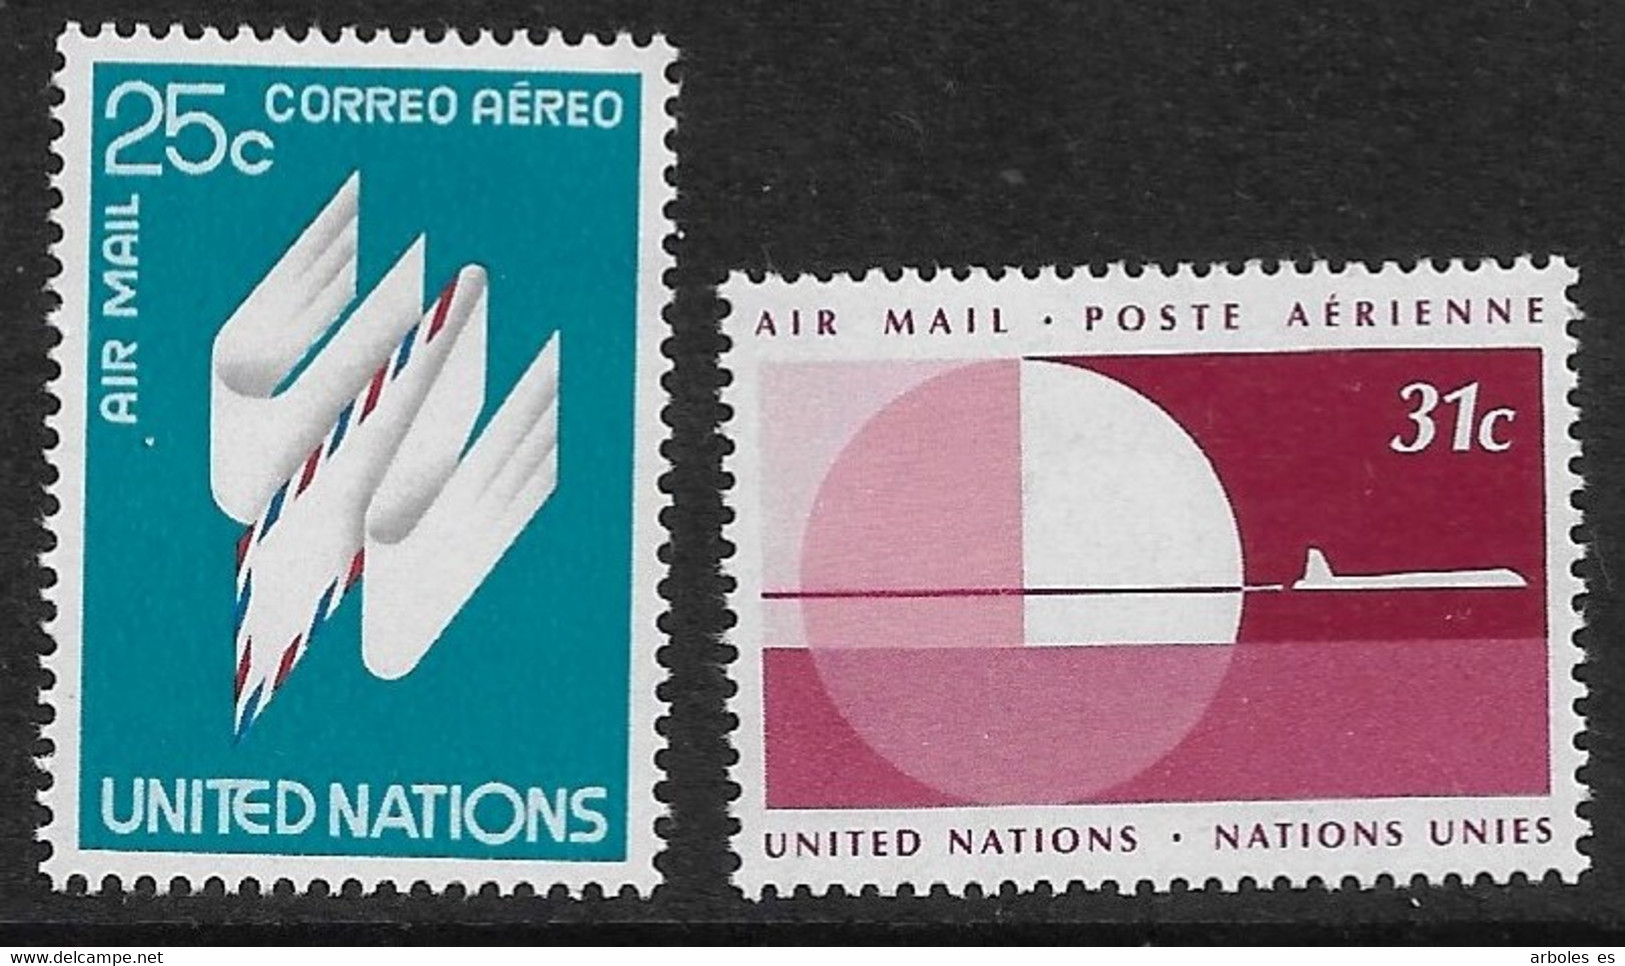 NACIONES UNIDAS - NEW YORK - SERIE BASICA - AÑO 1977 - CATALOGO YVERT Nº 0022-23 -  HOJA - NUEVOS - Airmail